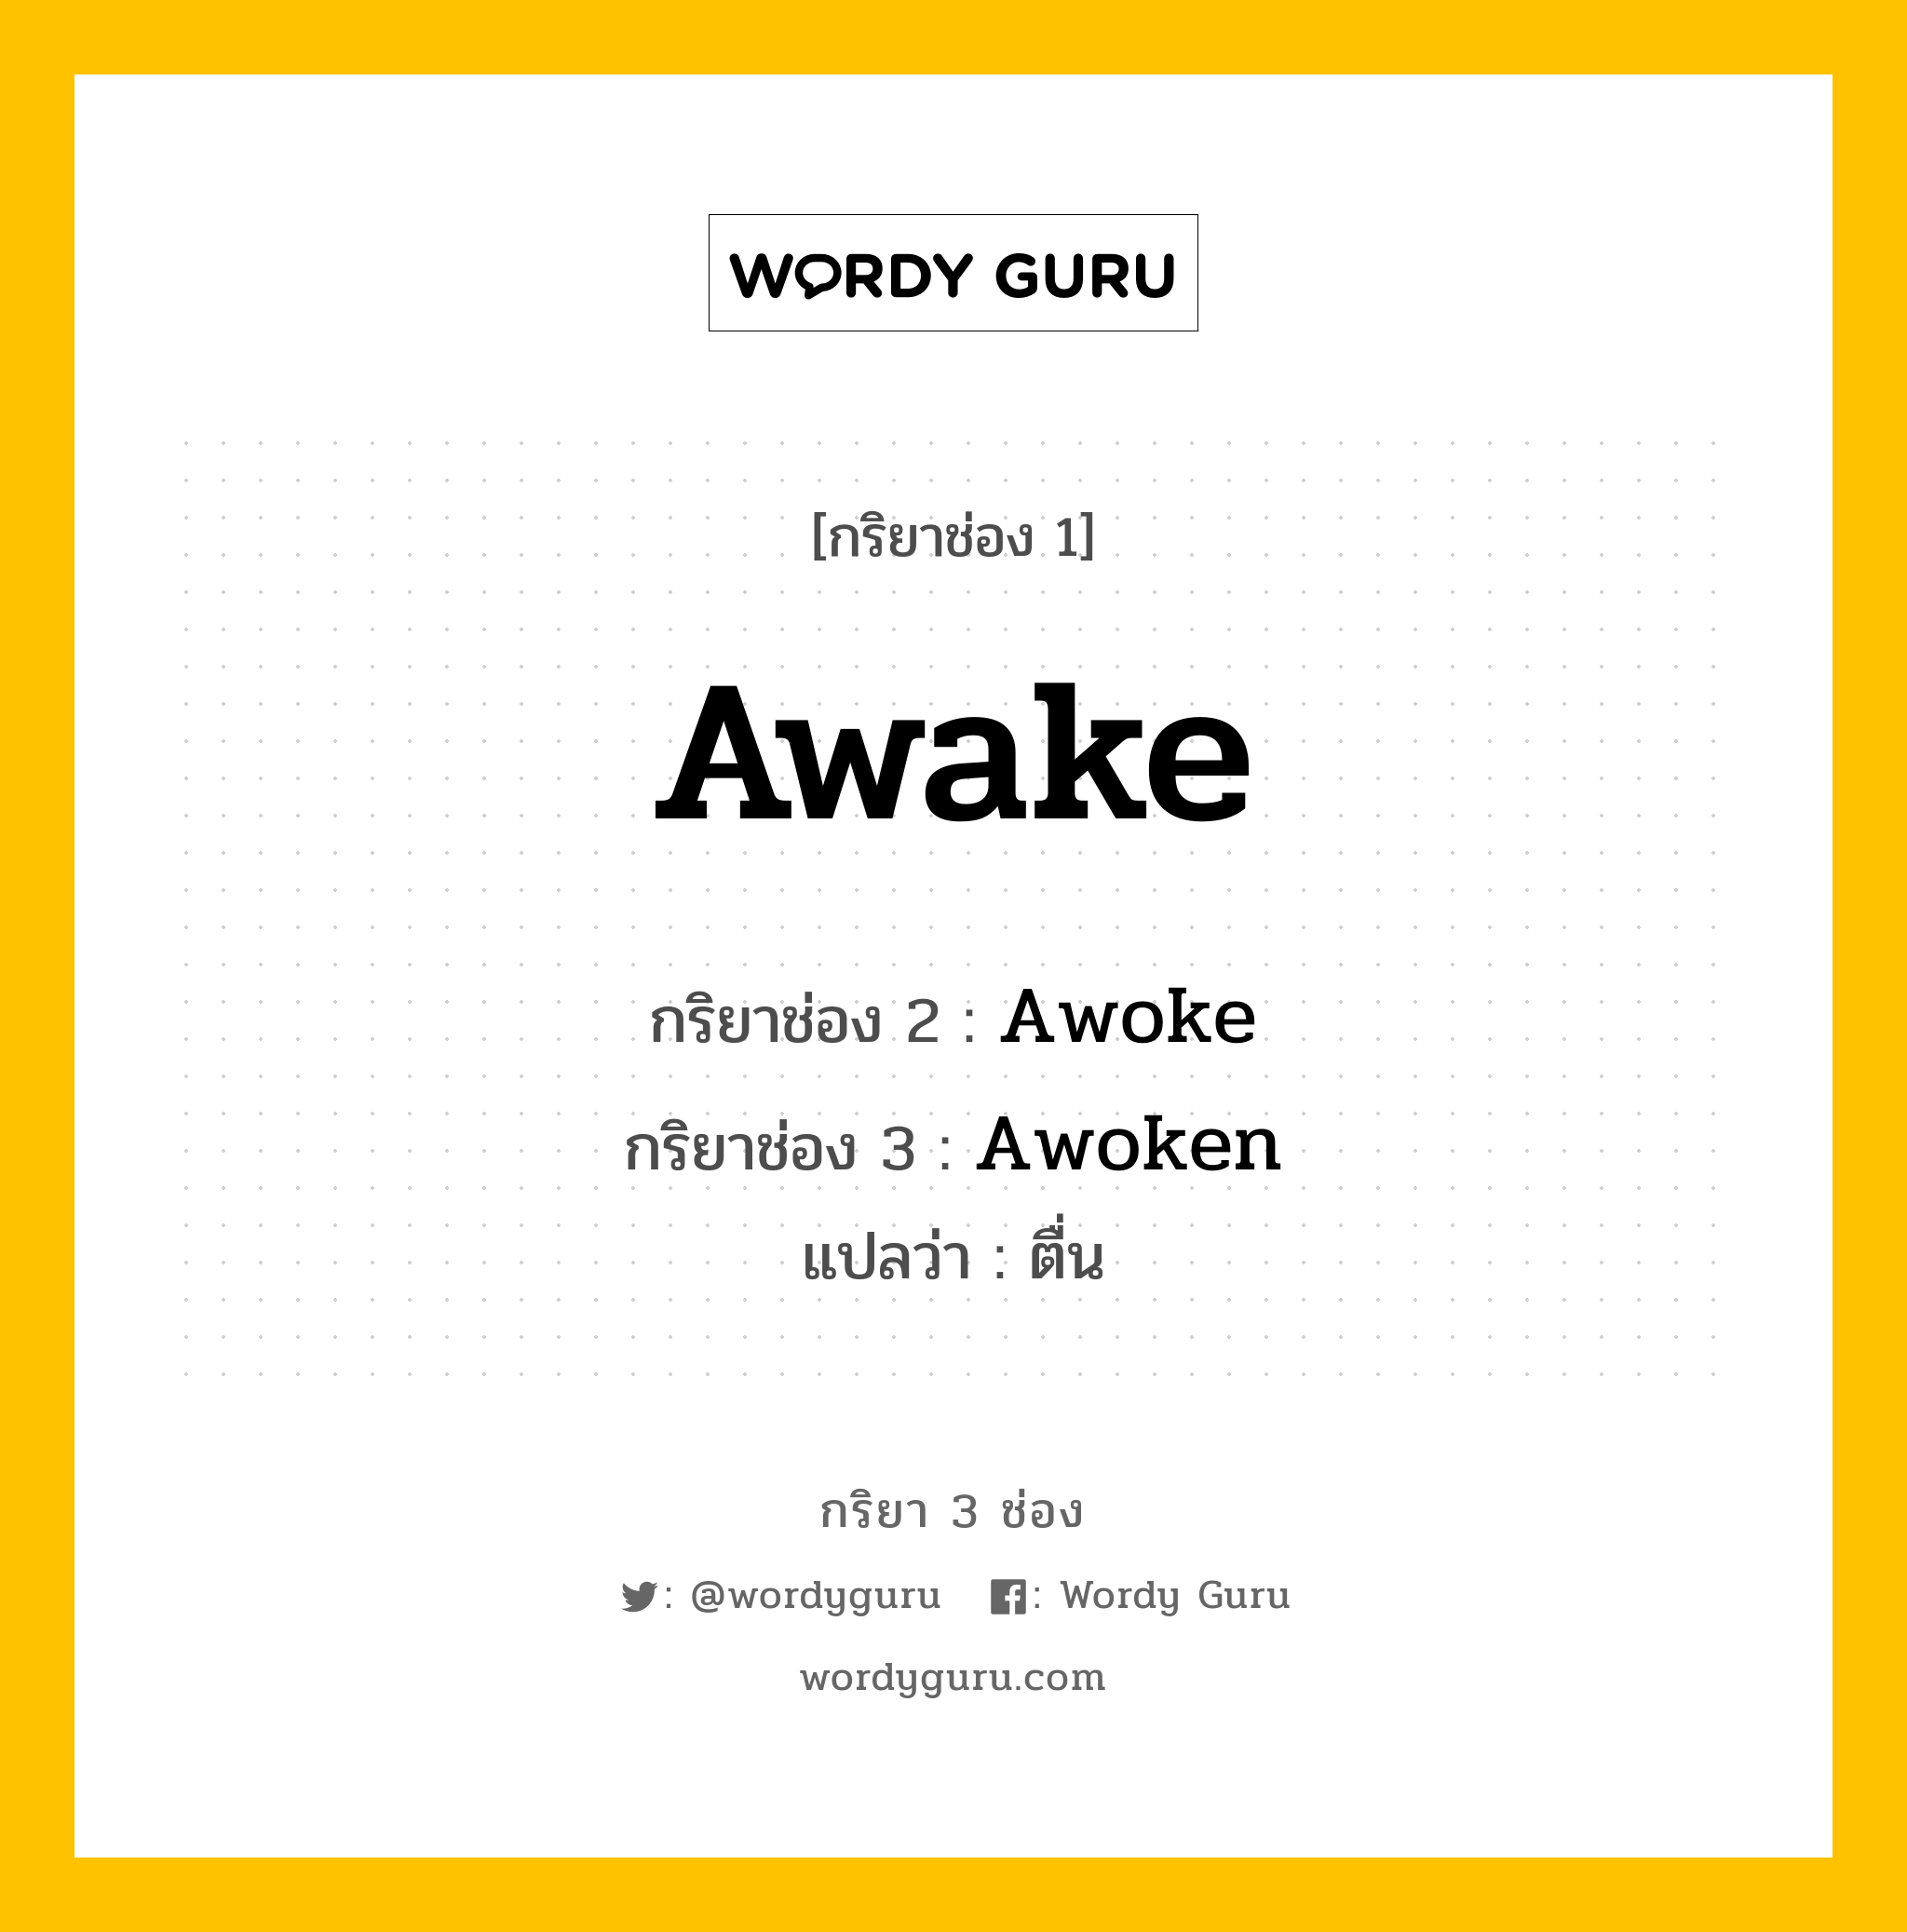 กริยา 3 ช่อง: Awake ช่อง 2 Awake ช่อง 3 คืออะไร, กริยาช่อง 1 Awake กริยาช่อง 2 Awoke กริยาช่อง 3 Awoken แปลว่า ตื่น หมวด Irregular Verb